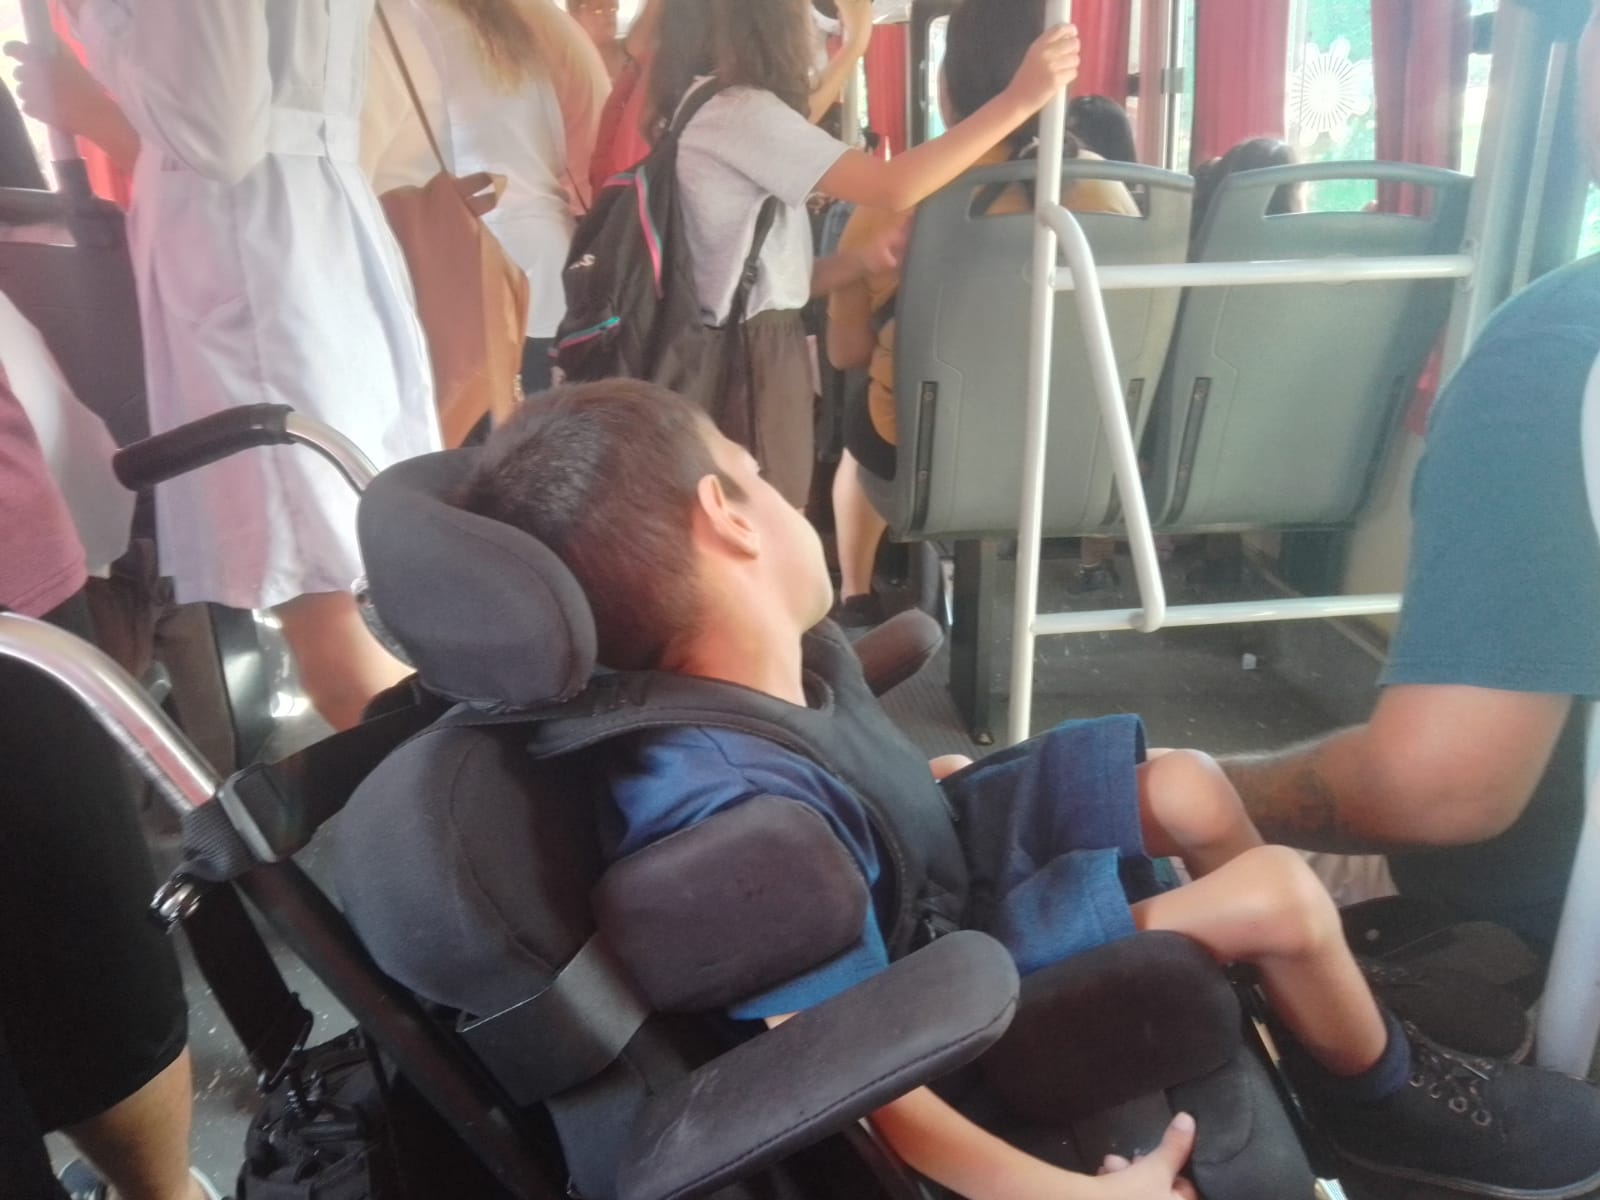 Niño con discapacidad viaja a diario al hospital y “los coles no tienen rampa”